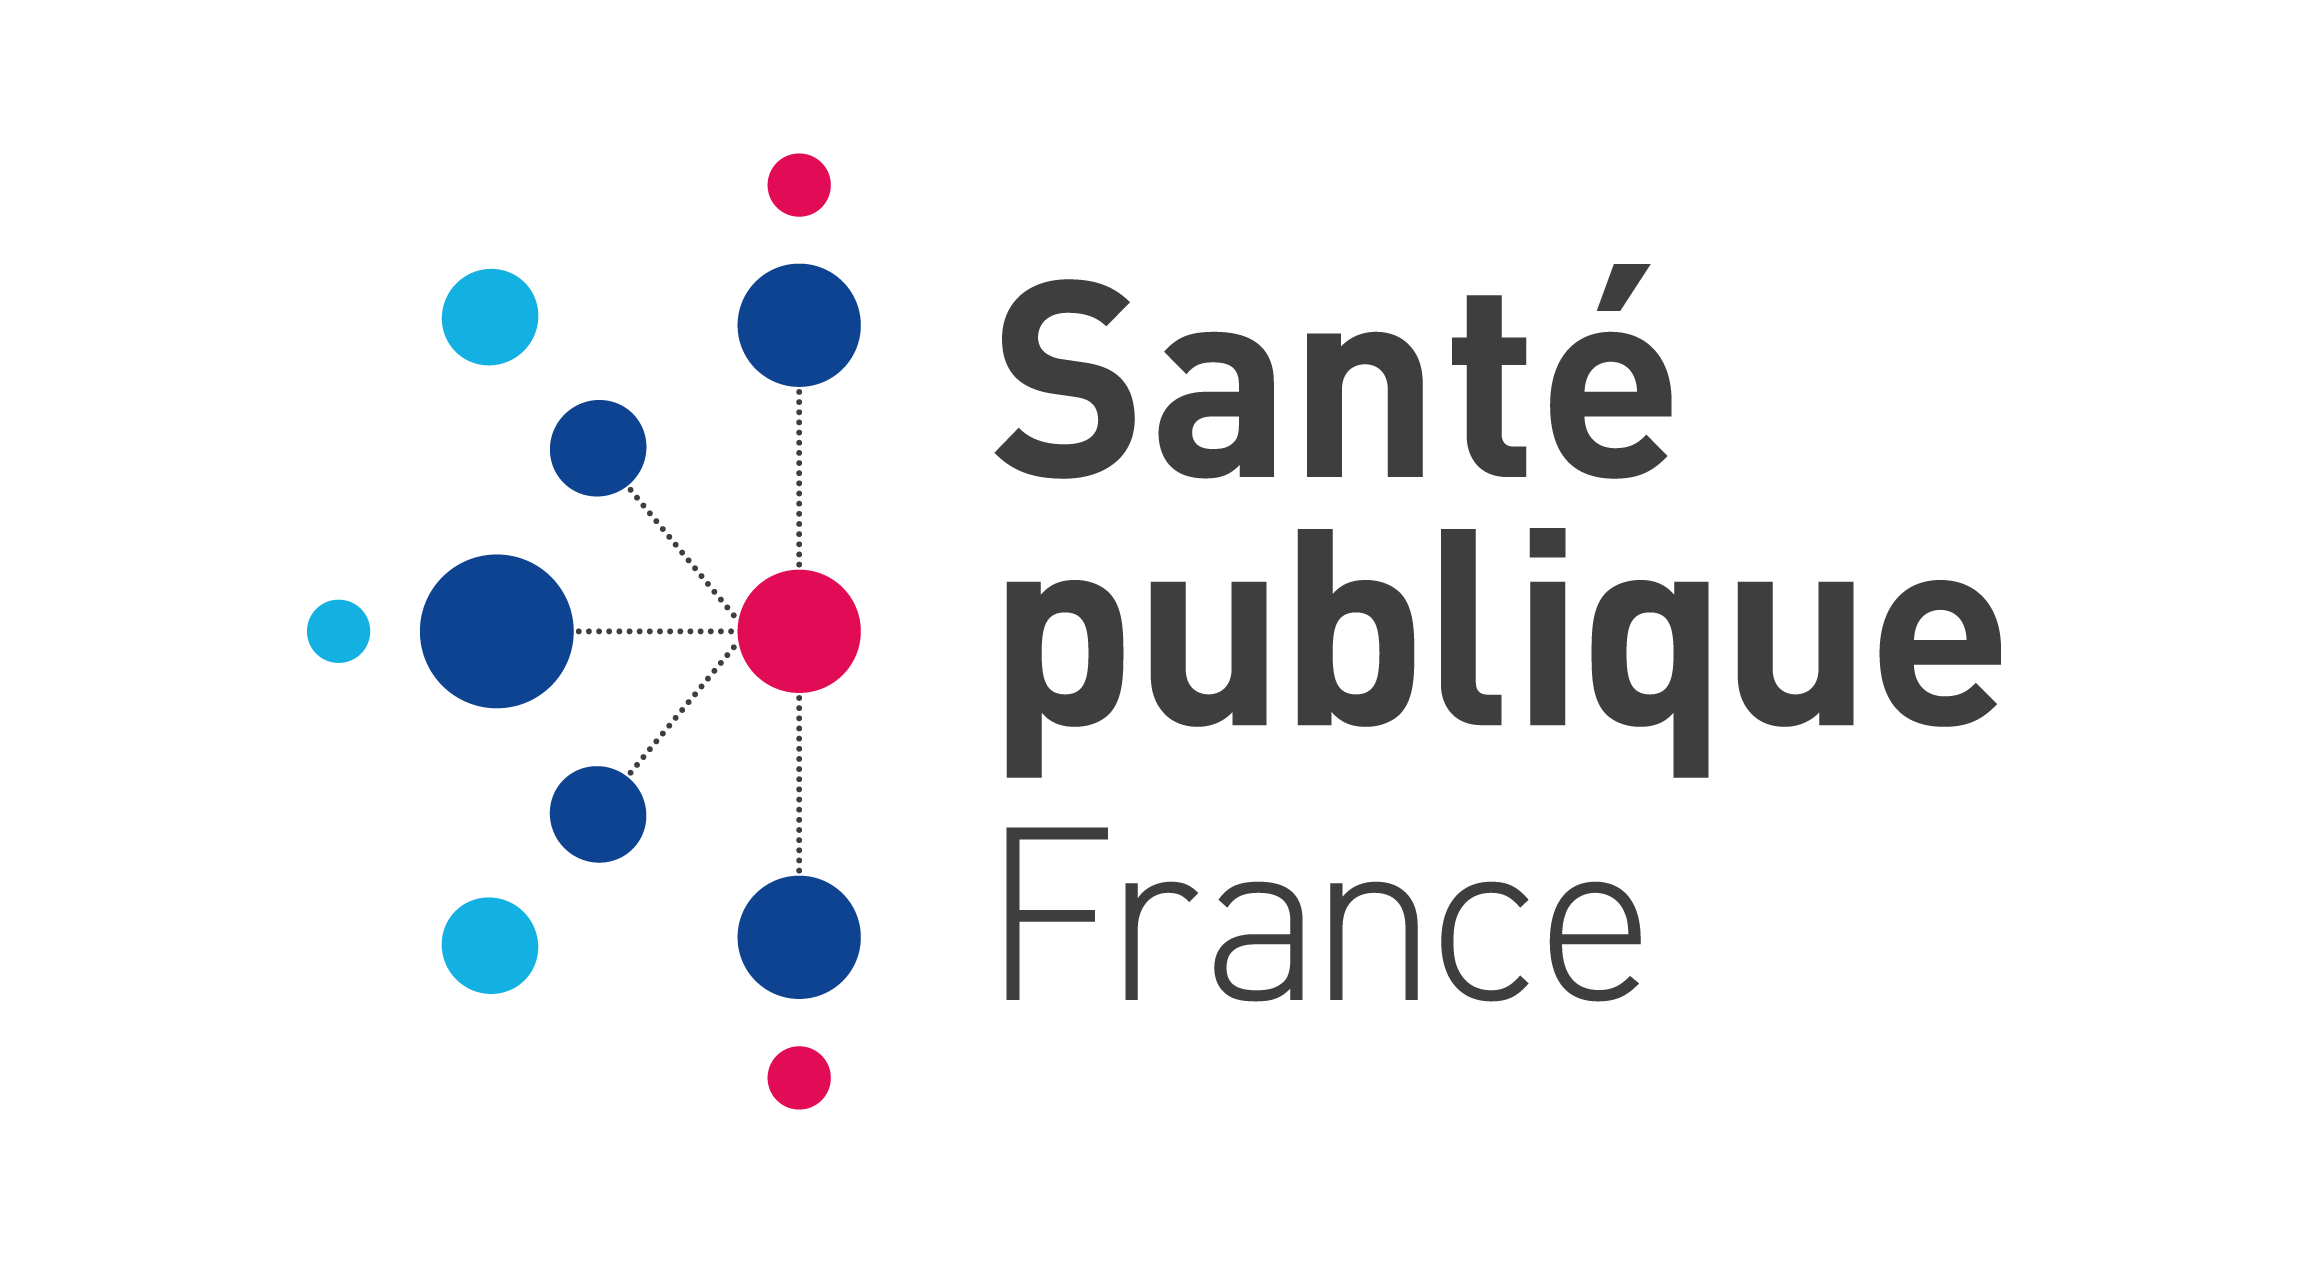 Santé publique France